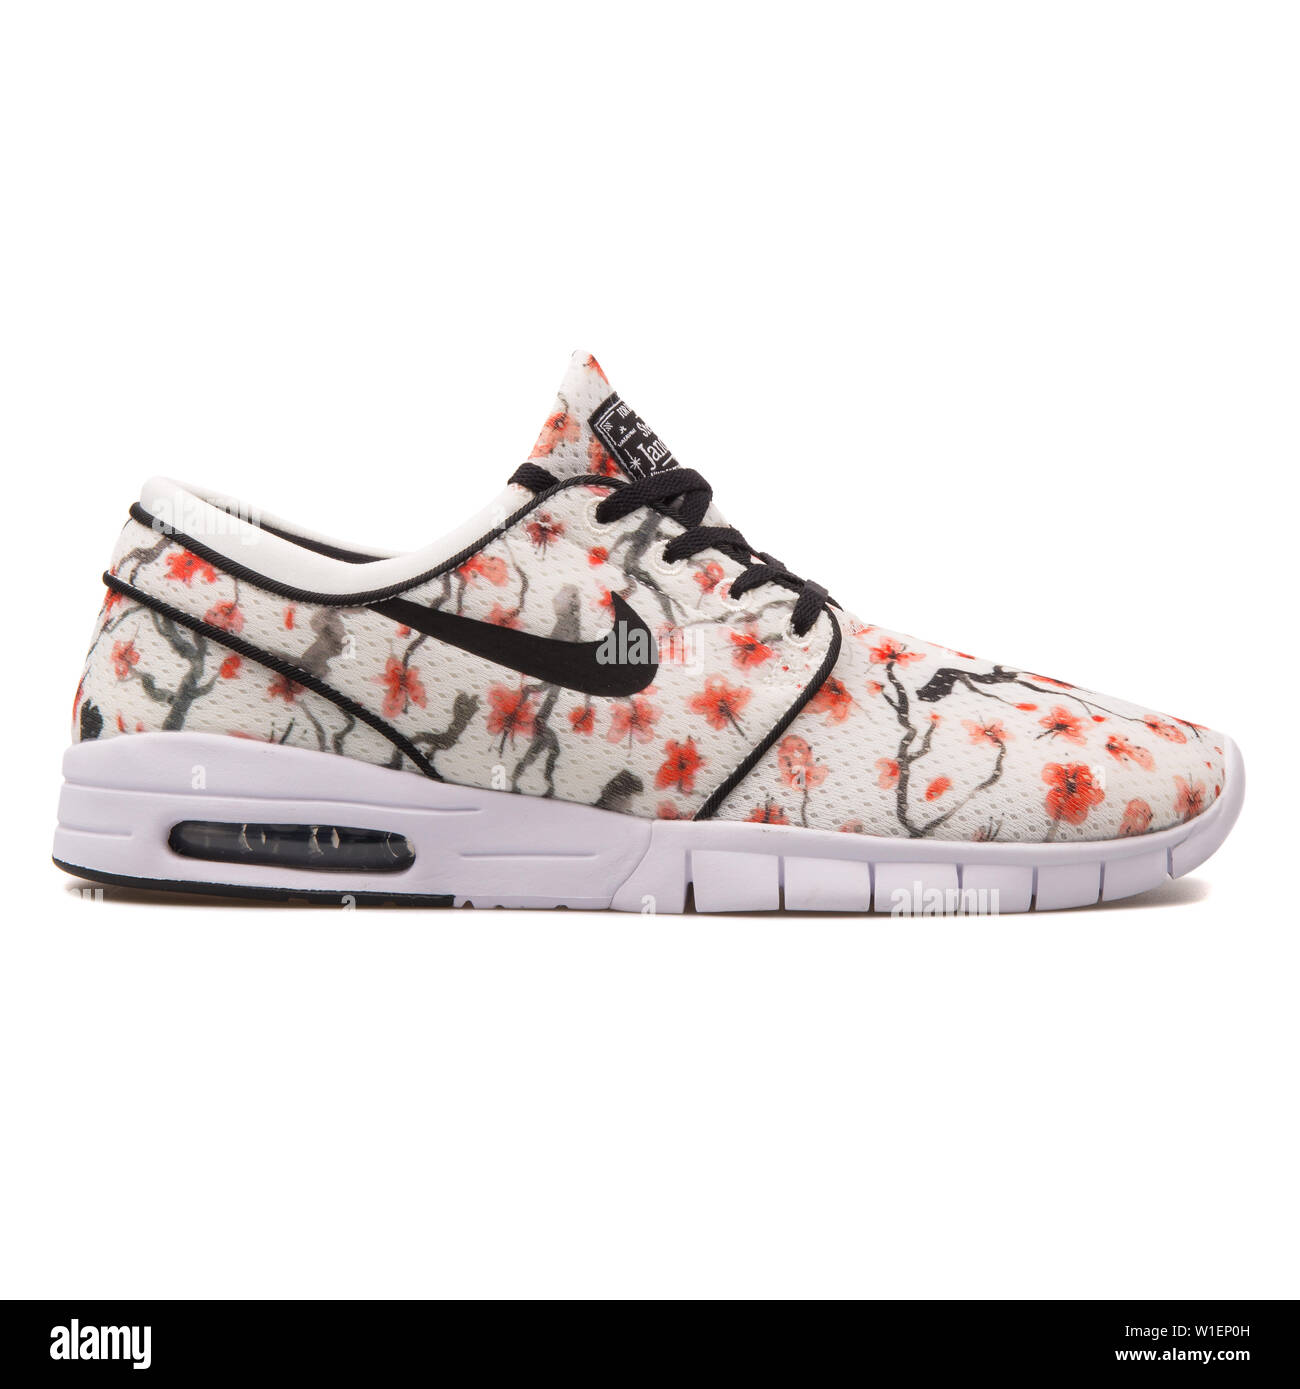 Wien, Österreich - 10 August 2017: Nike Stefan Janoski Max Premium Cherry Blossom Sneaker auf weißem Hintergrund. Stockfoto